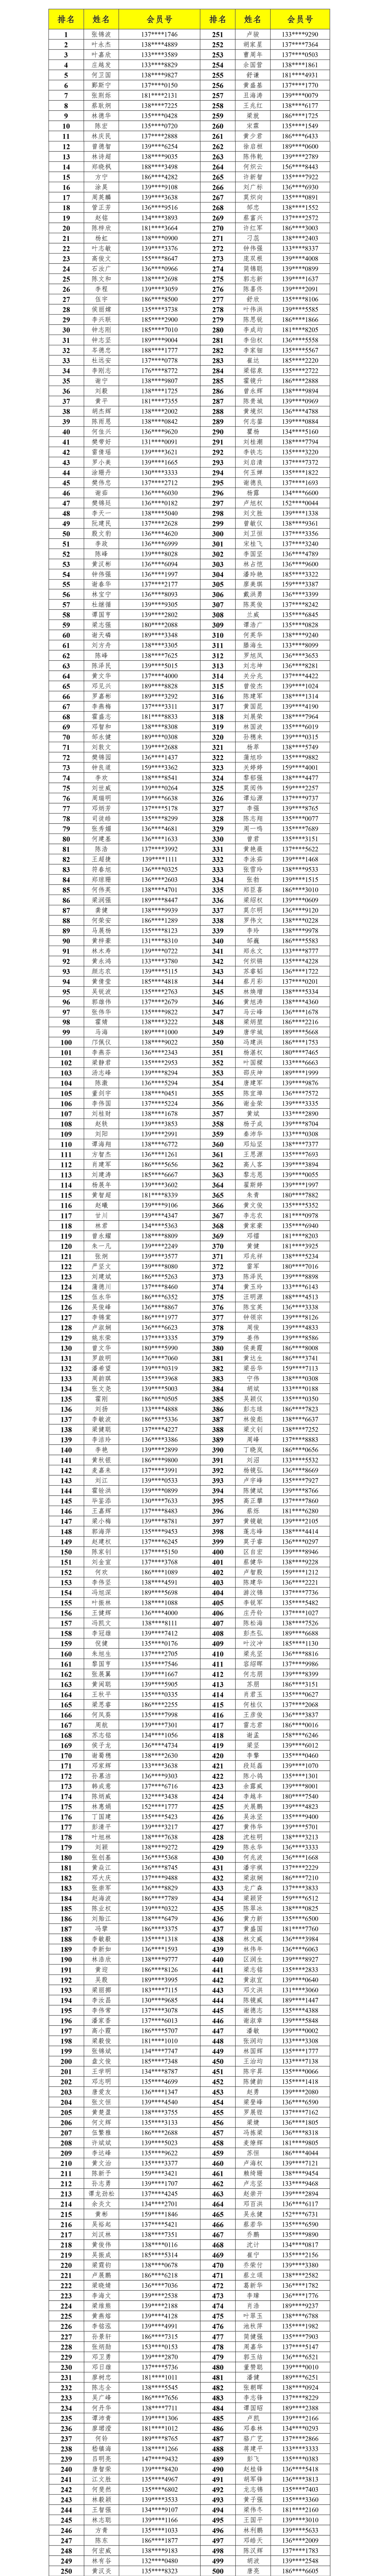 中超足球宝贝充值 广州恒大淘宝足球俱乐部2020赛季会员卡(4)